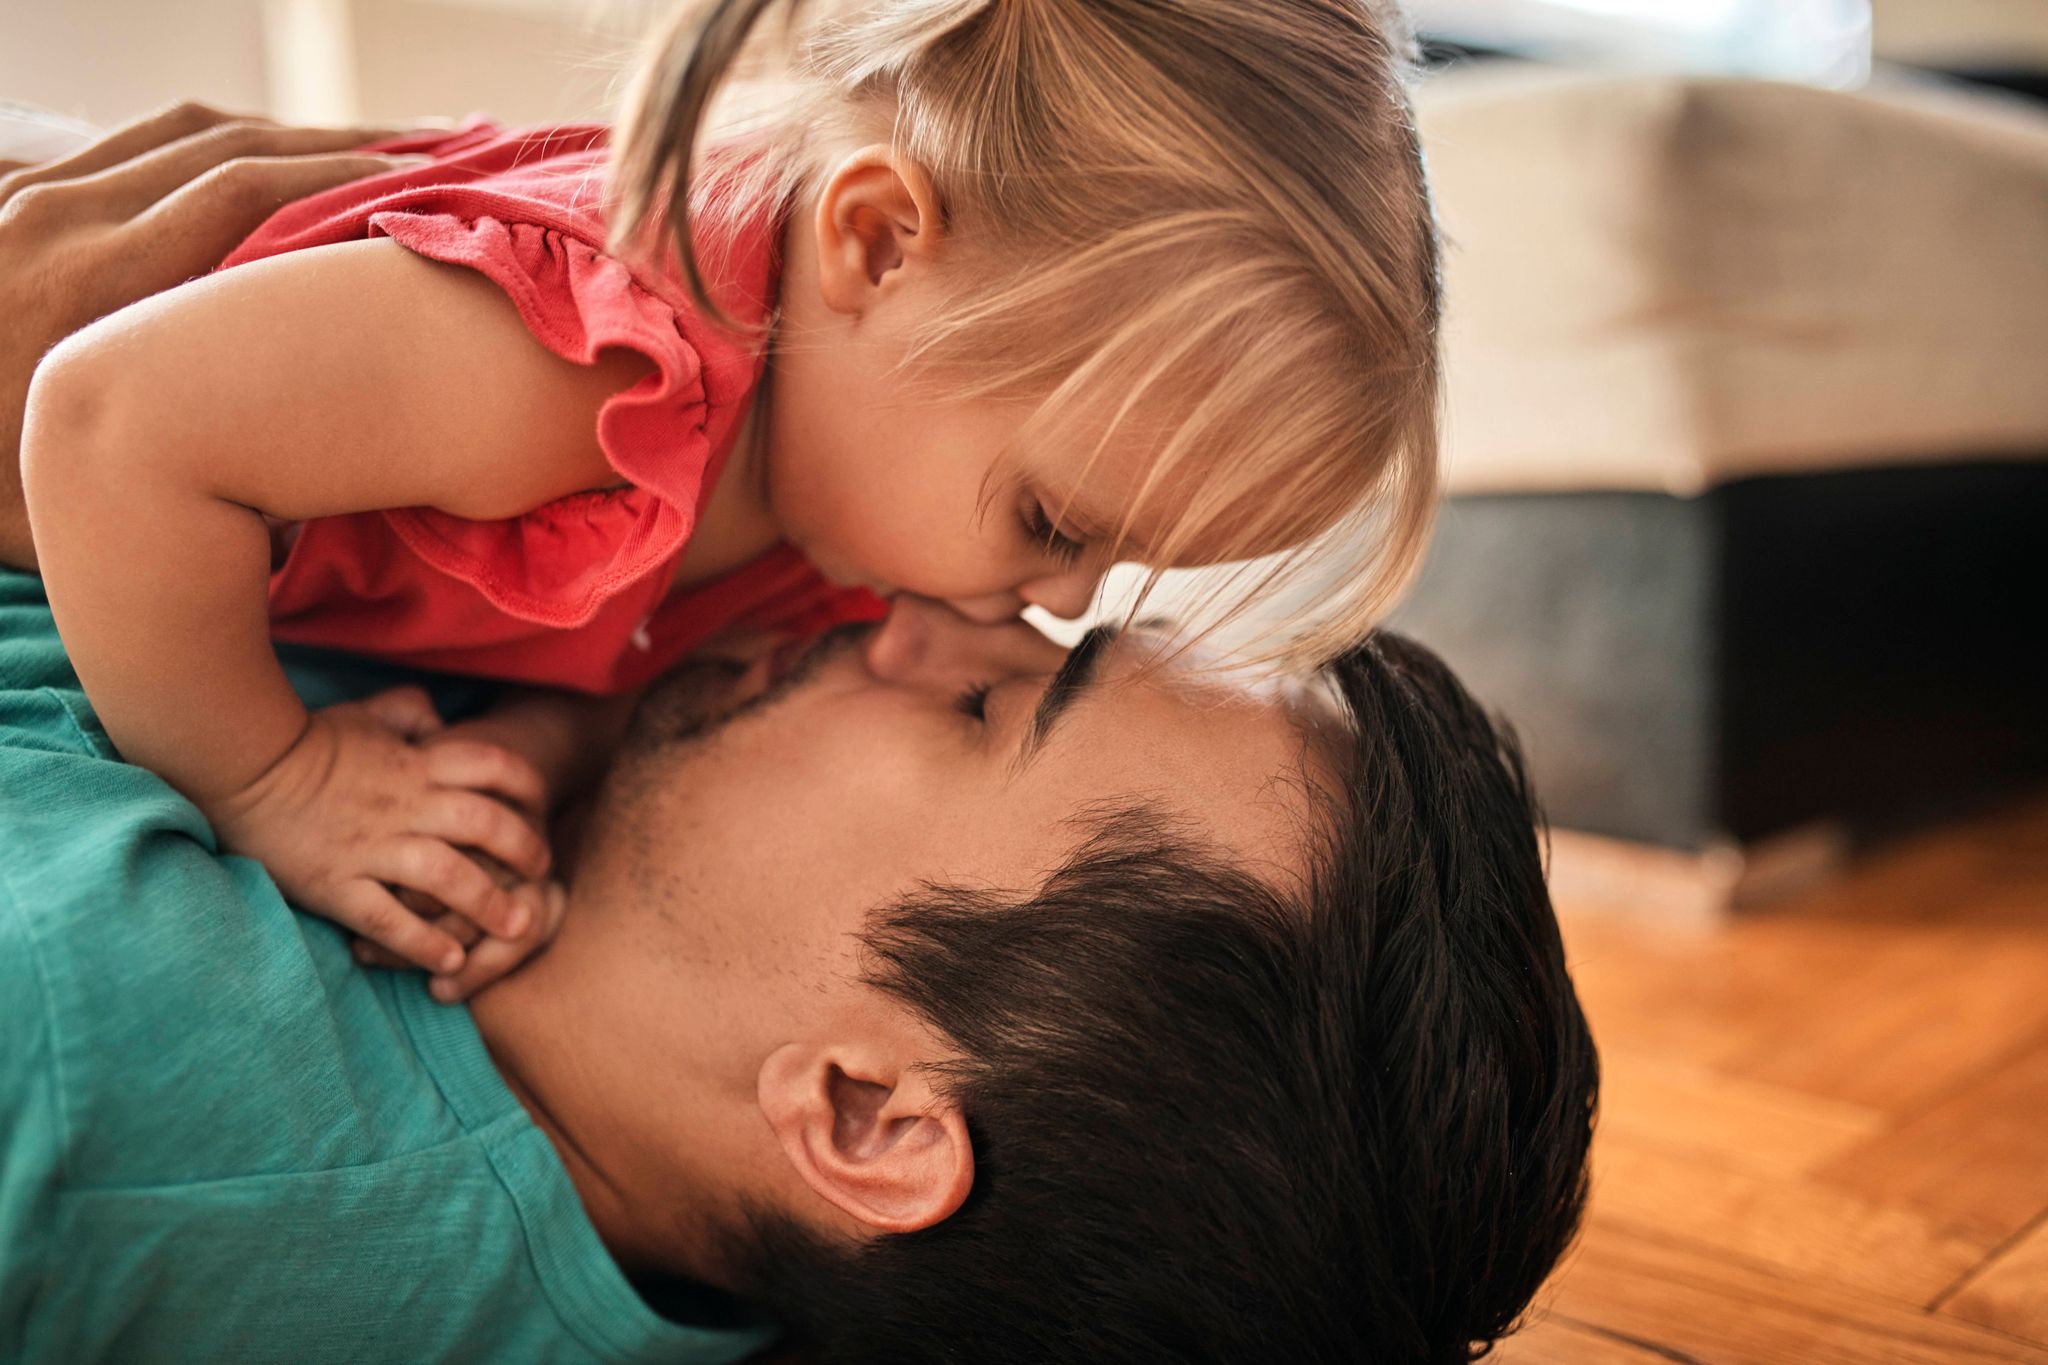 Vater und Tochter kuscheln zunächst ganz friedlich. Bis das Töchterchen Papa unvermittelt in die Nase beißt - Aua!